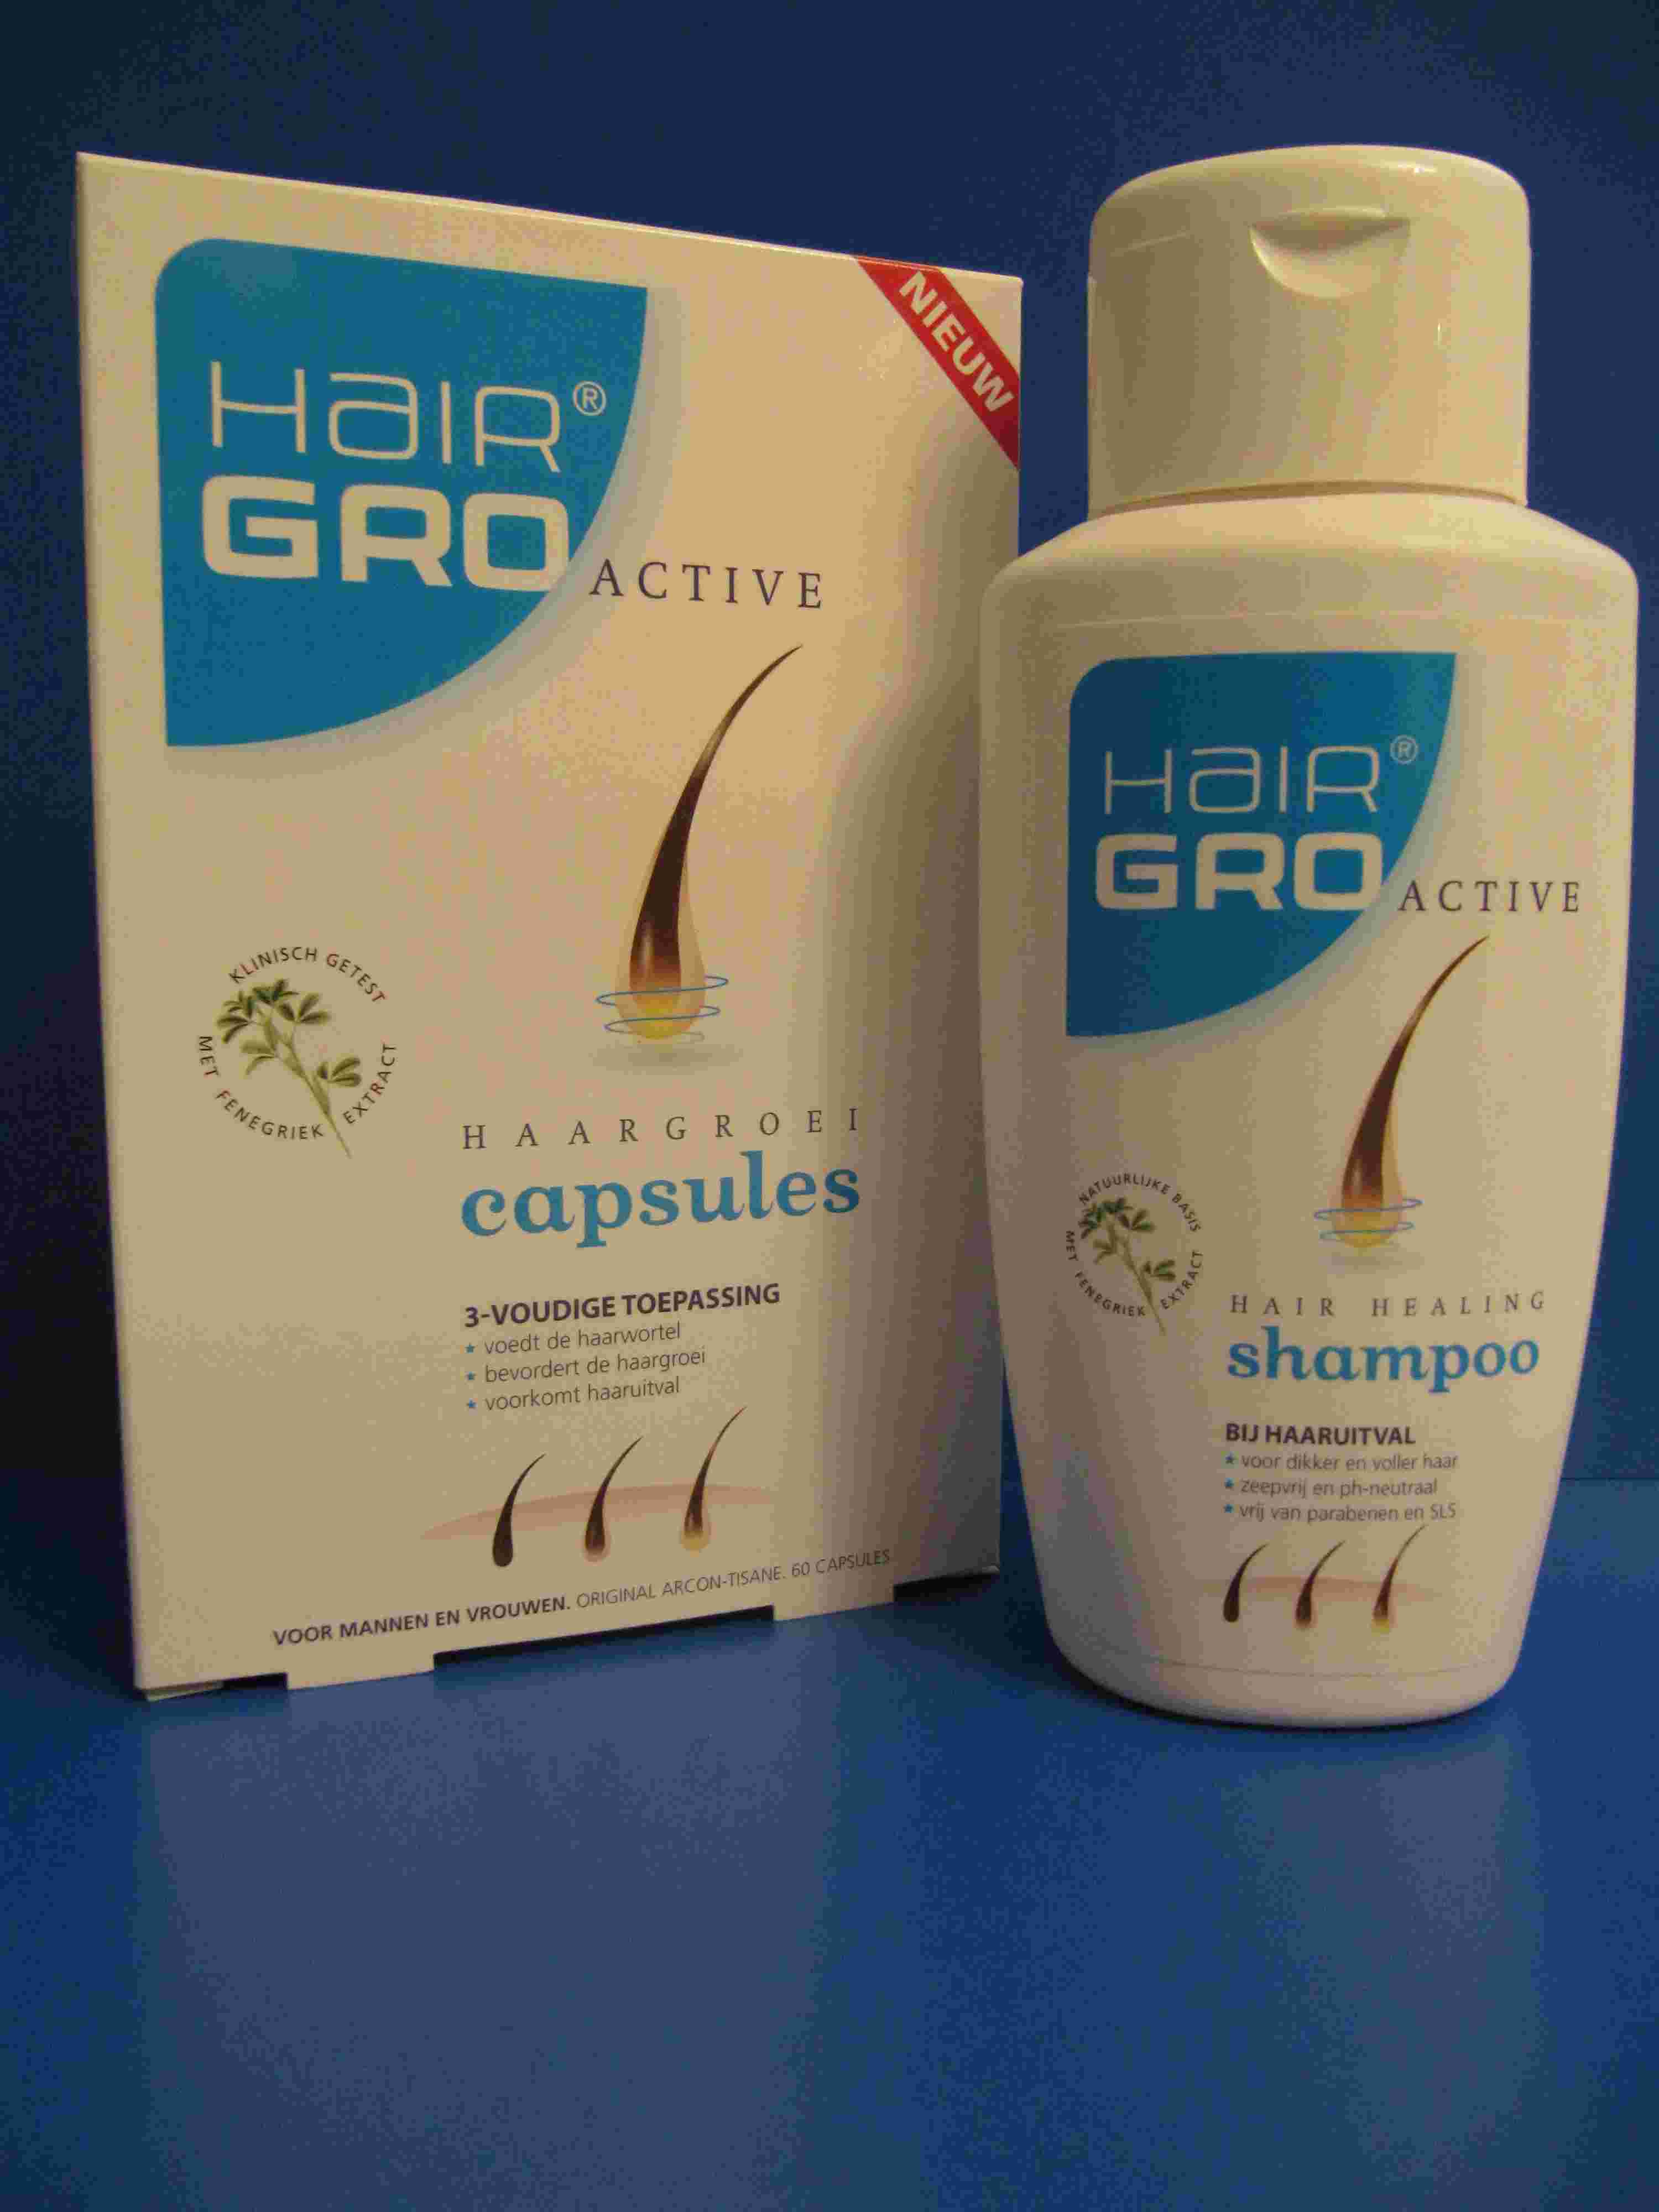 Hairgro Active capsules  verminderde hairgroei voorkomt haaruitval dun haar voedt haarwortel